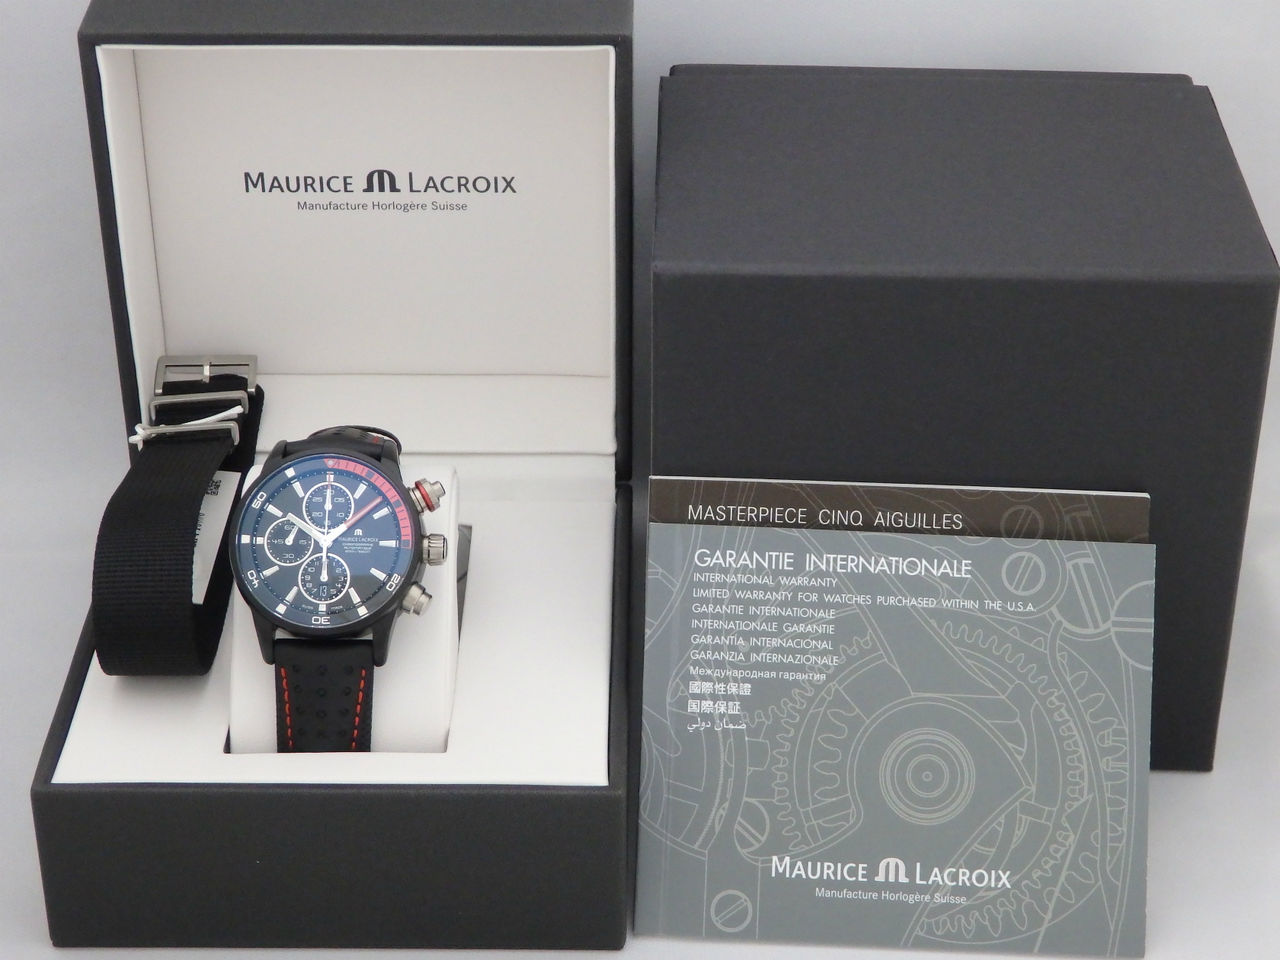 MAURICE LACROIX モーリス・ラクロア メンズ腕時計 ポントス S エクストリーム リミテッド 限定999本 PT6028-ALB01-331 ブラック文字盤 アルミ合金 自動巻き